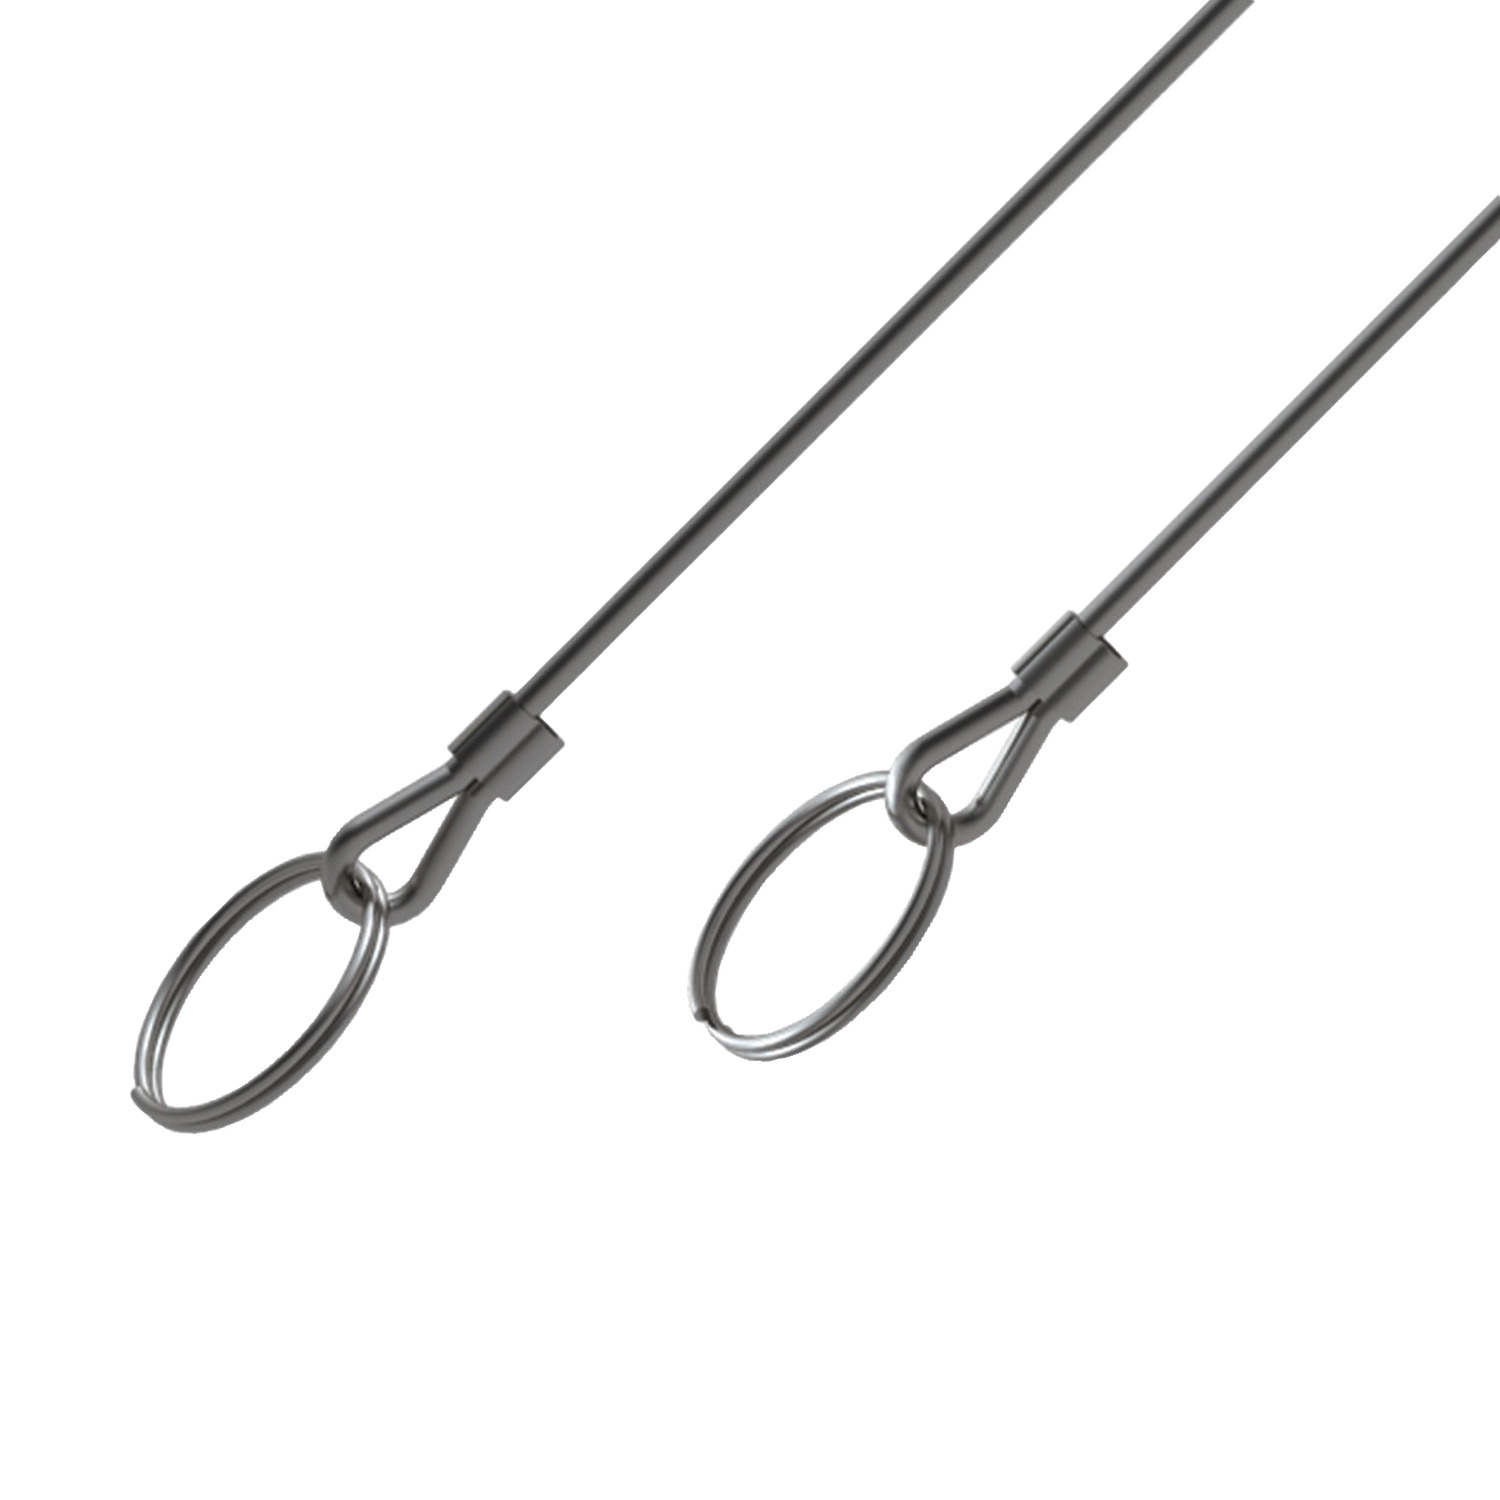 Product 33250, Lanyard - Loop to Loop with split rings - crimps stainless / 